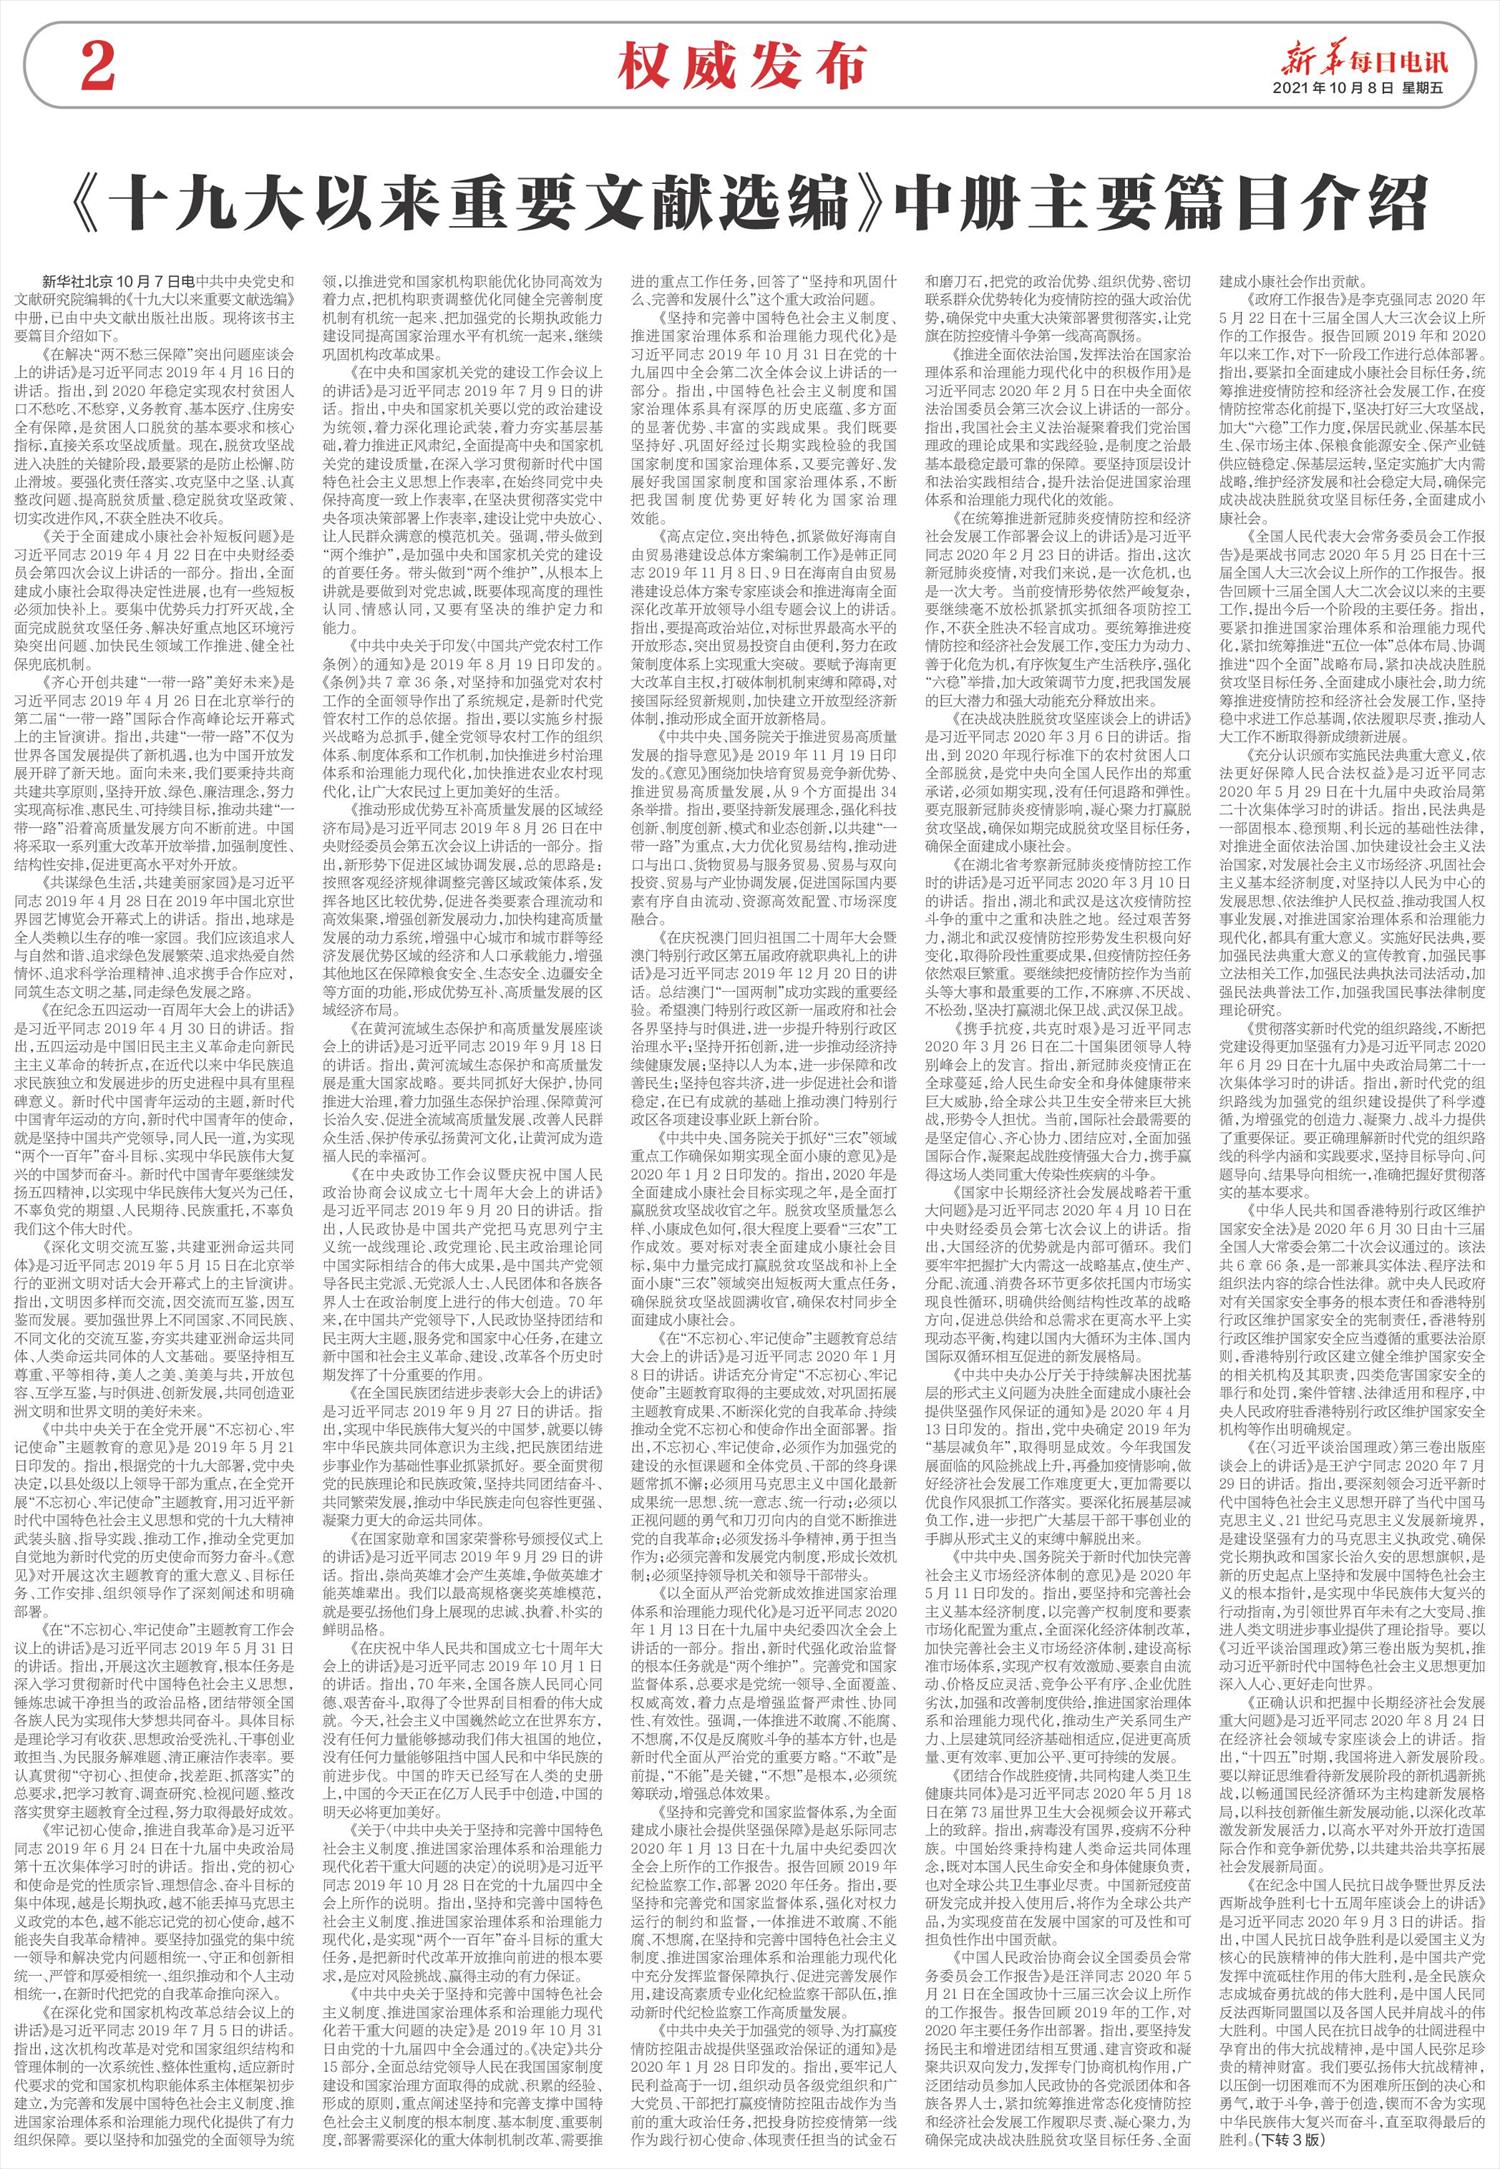 新华每日电讯-微报纸-2021年10月08日